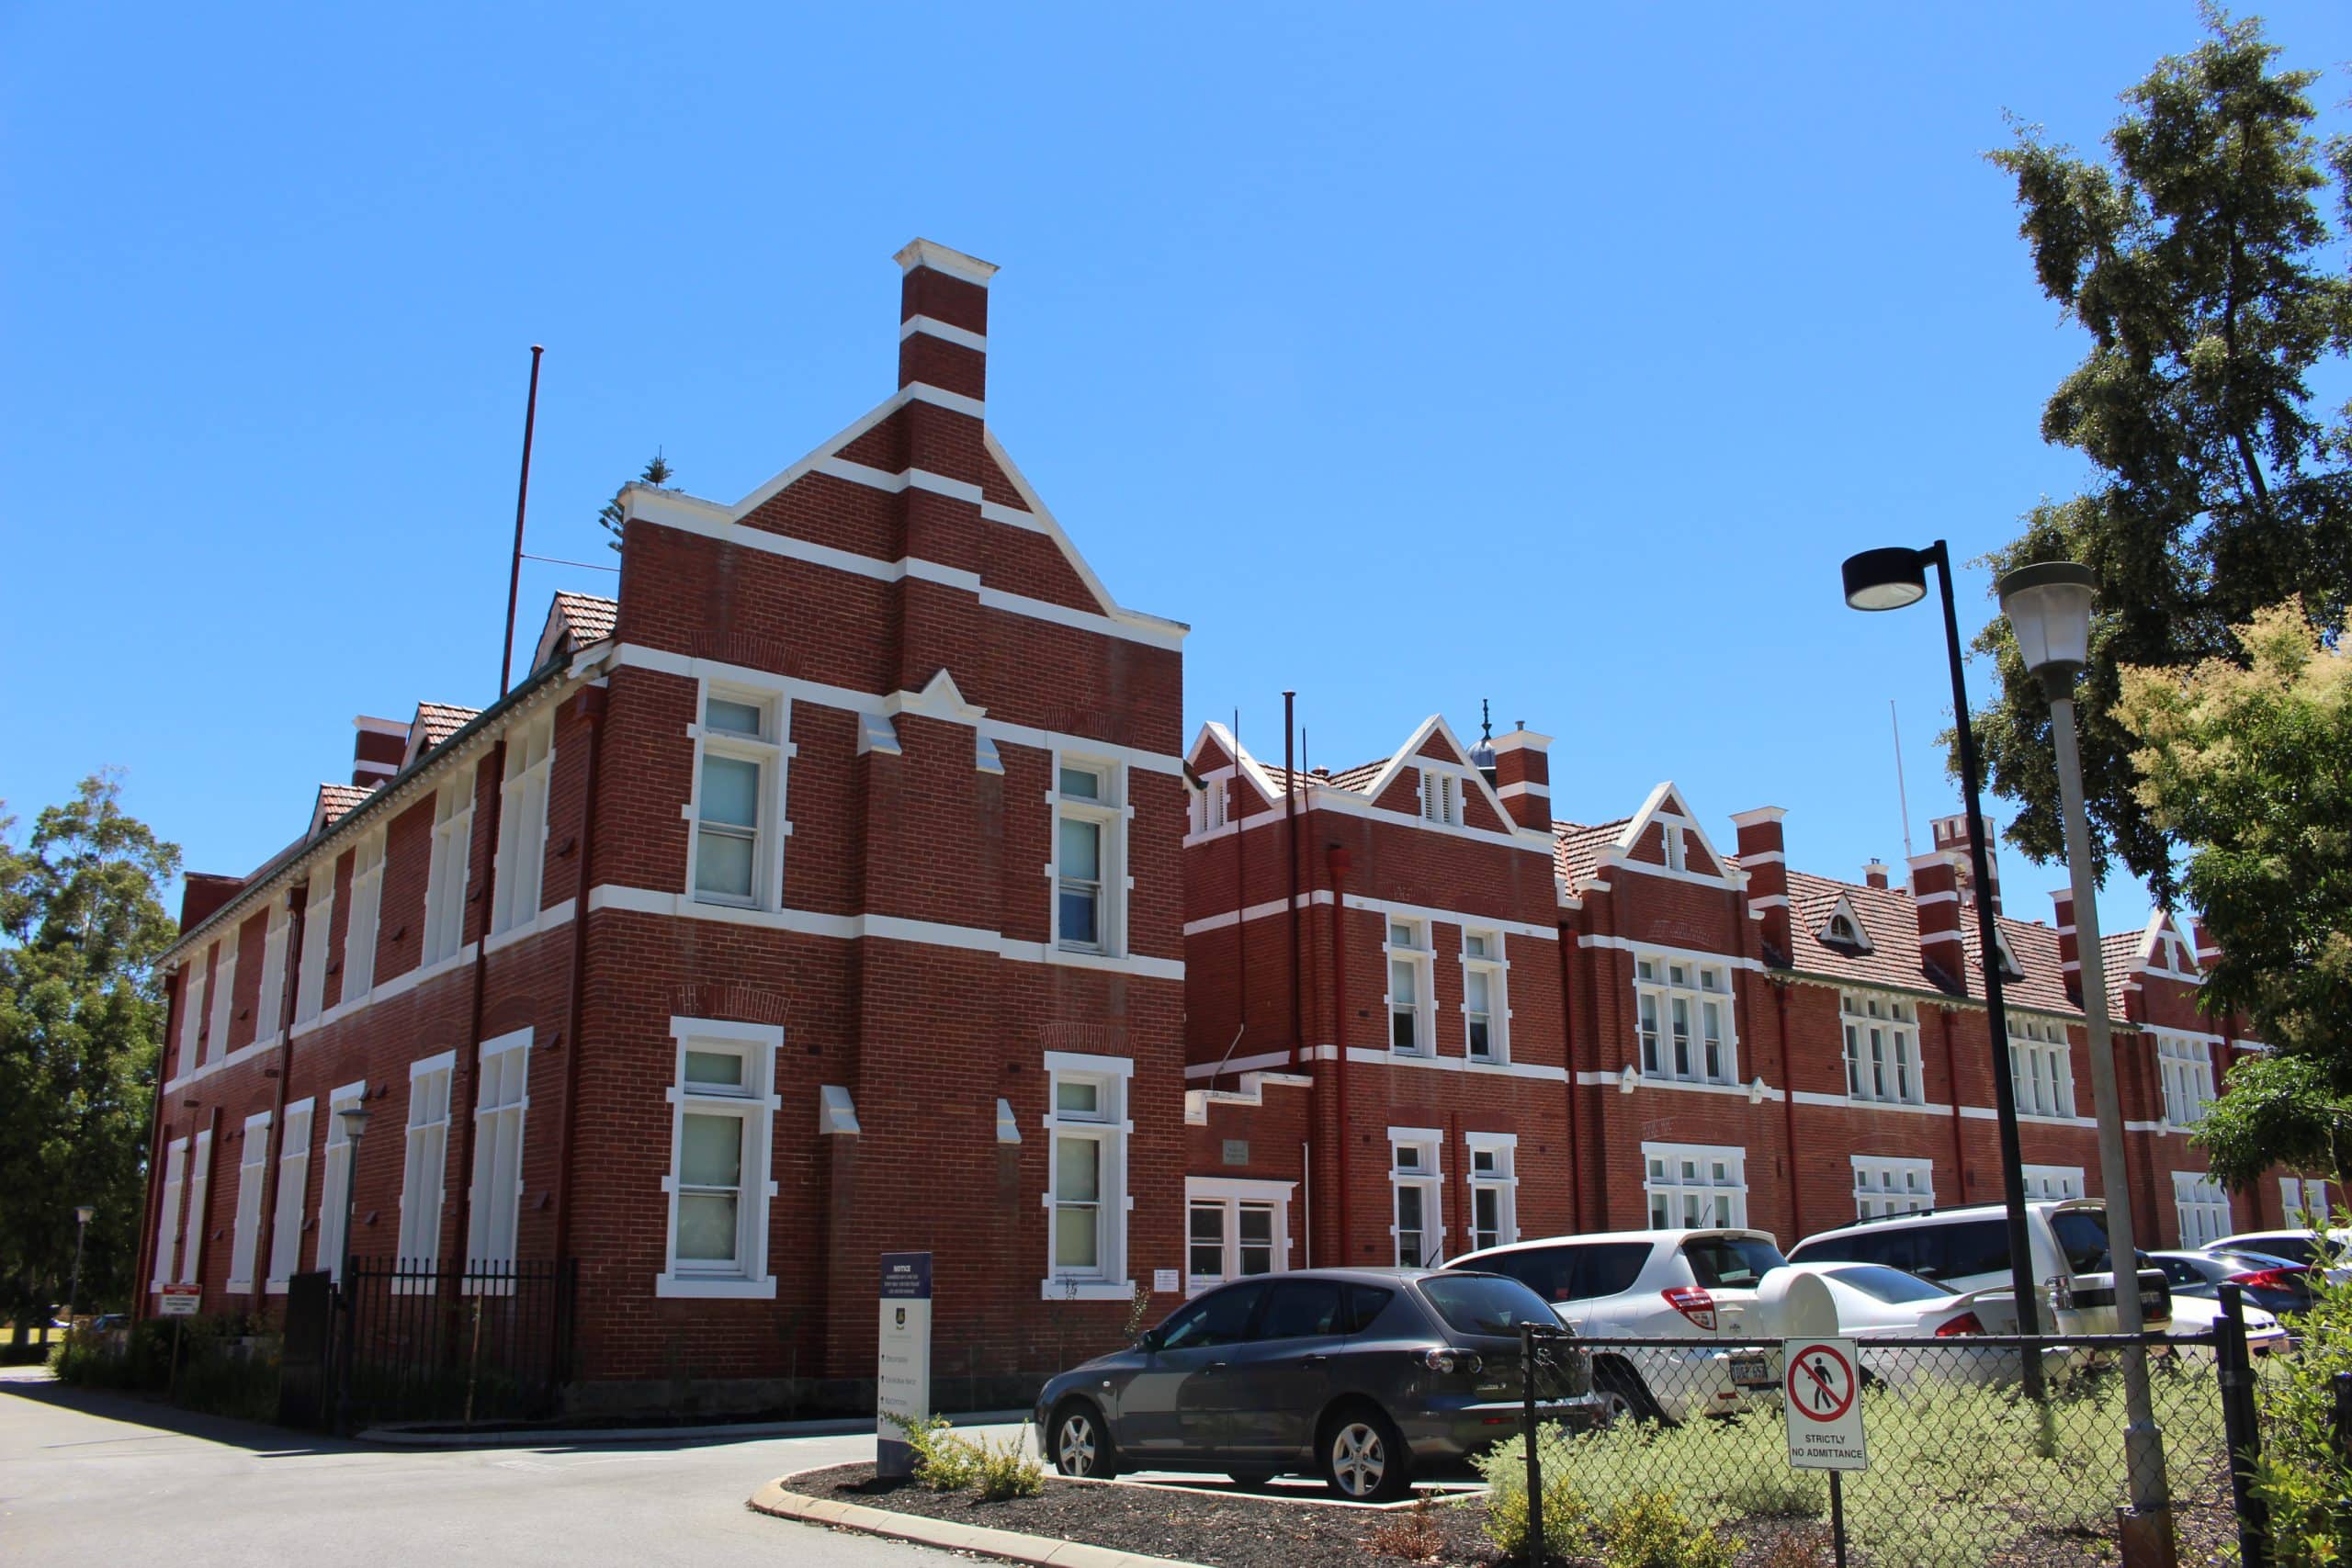 Perth Modern School campus